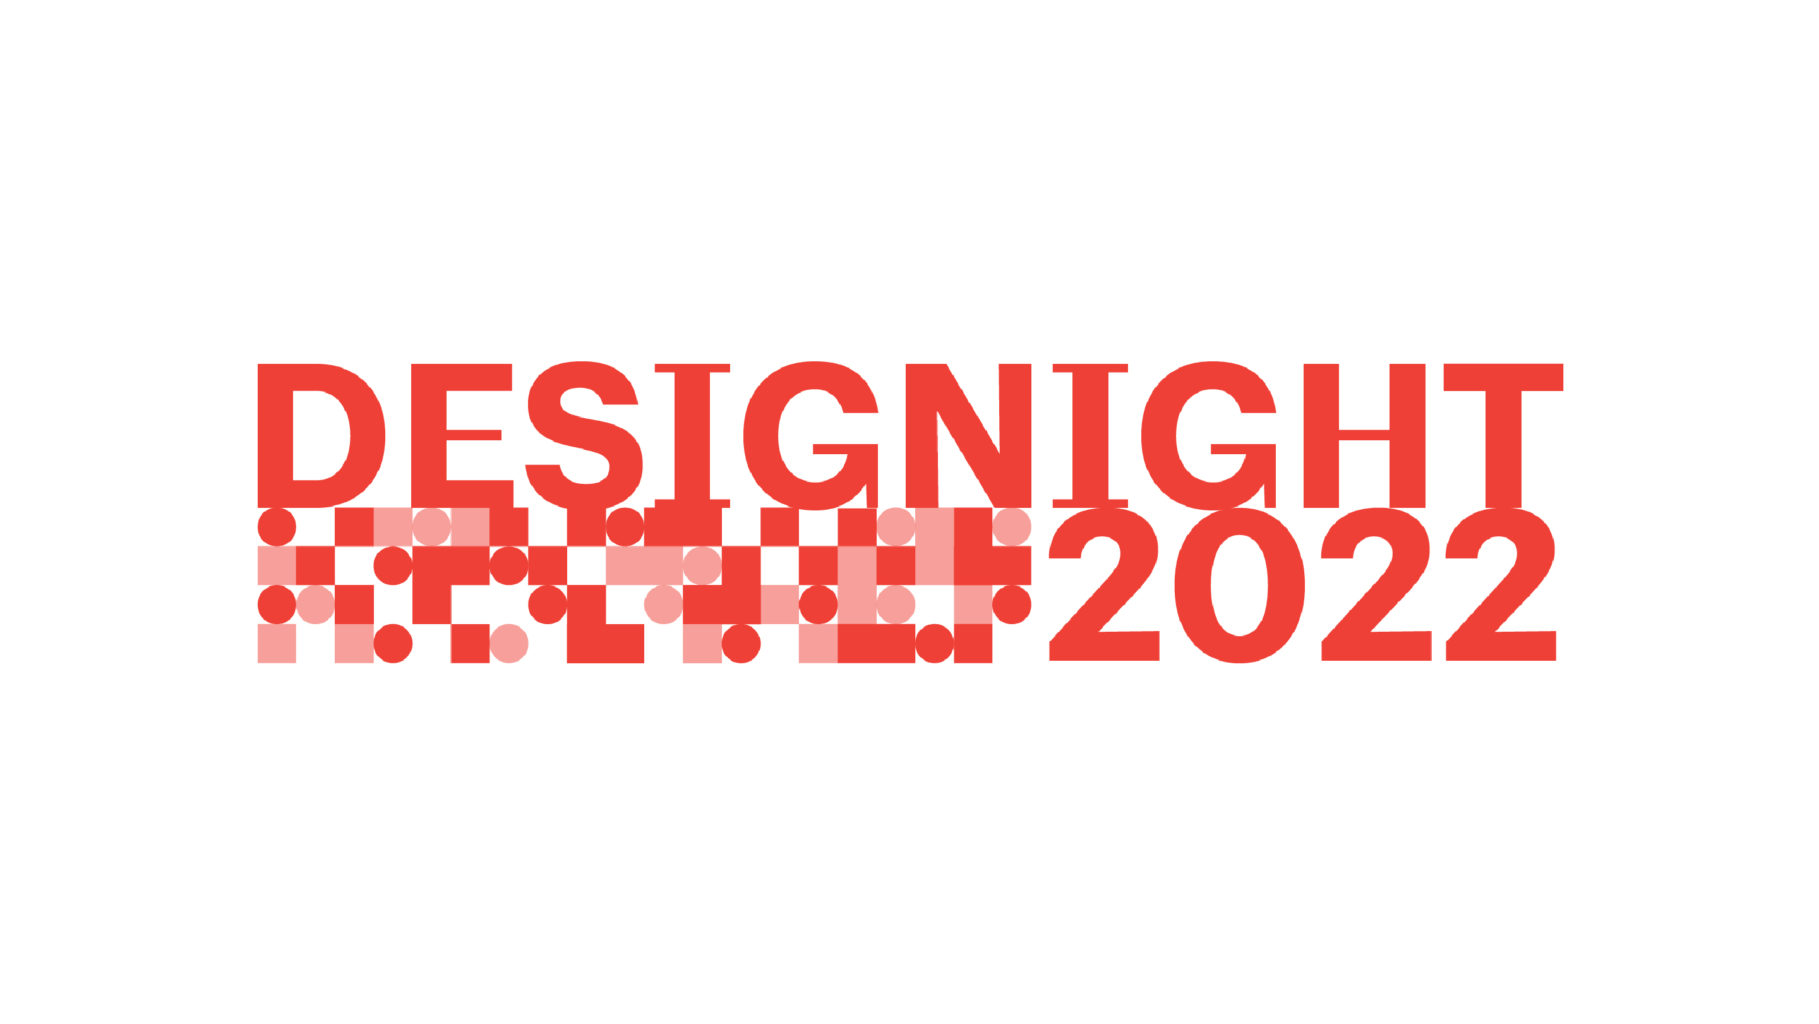 Designight 2022